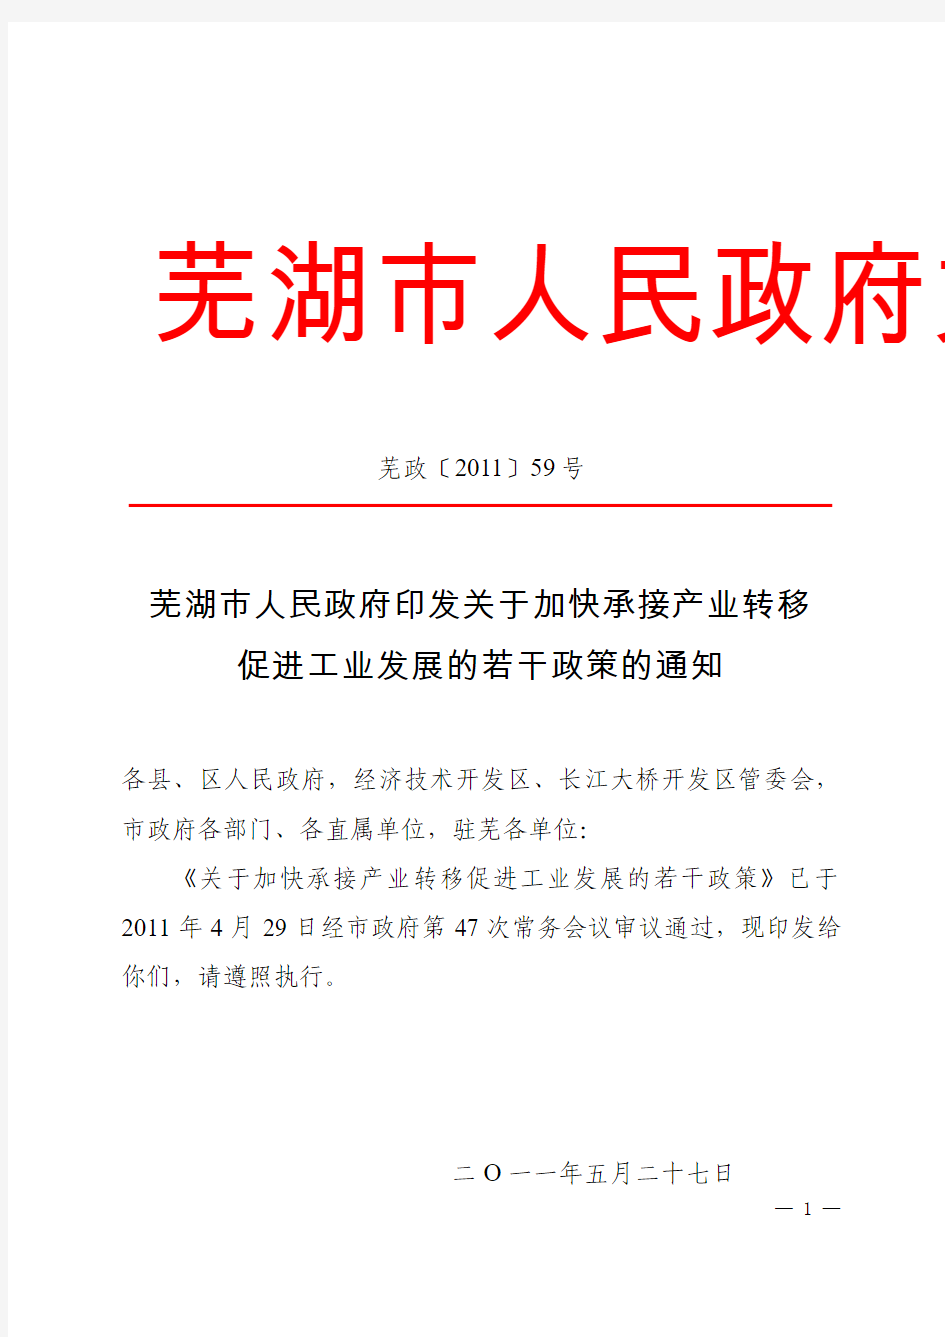 344-芜湖市人民政府文件